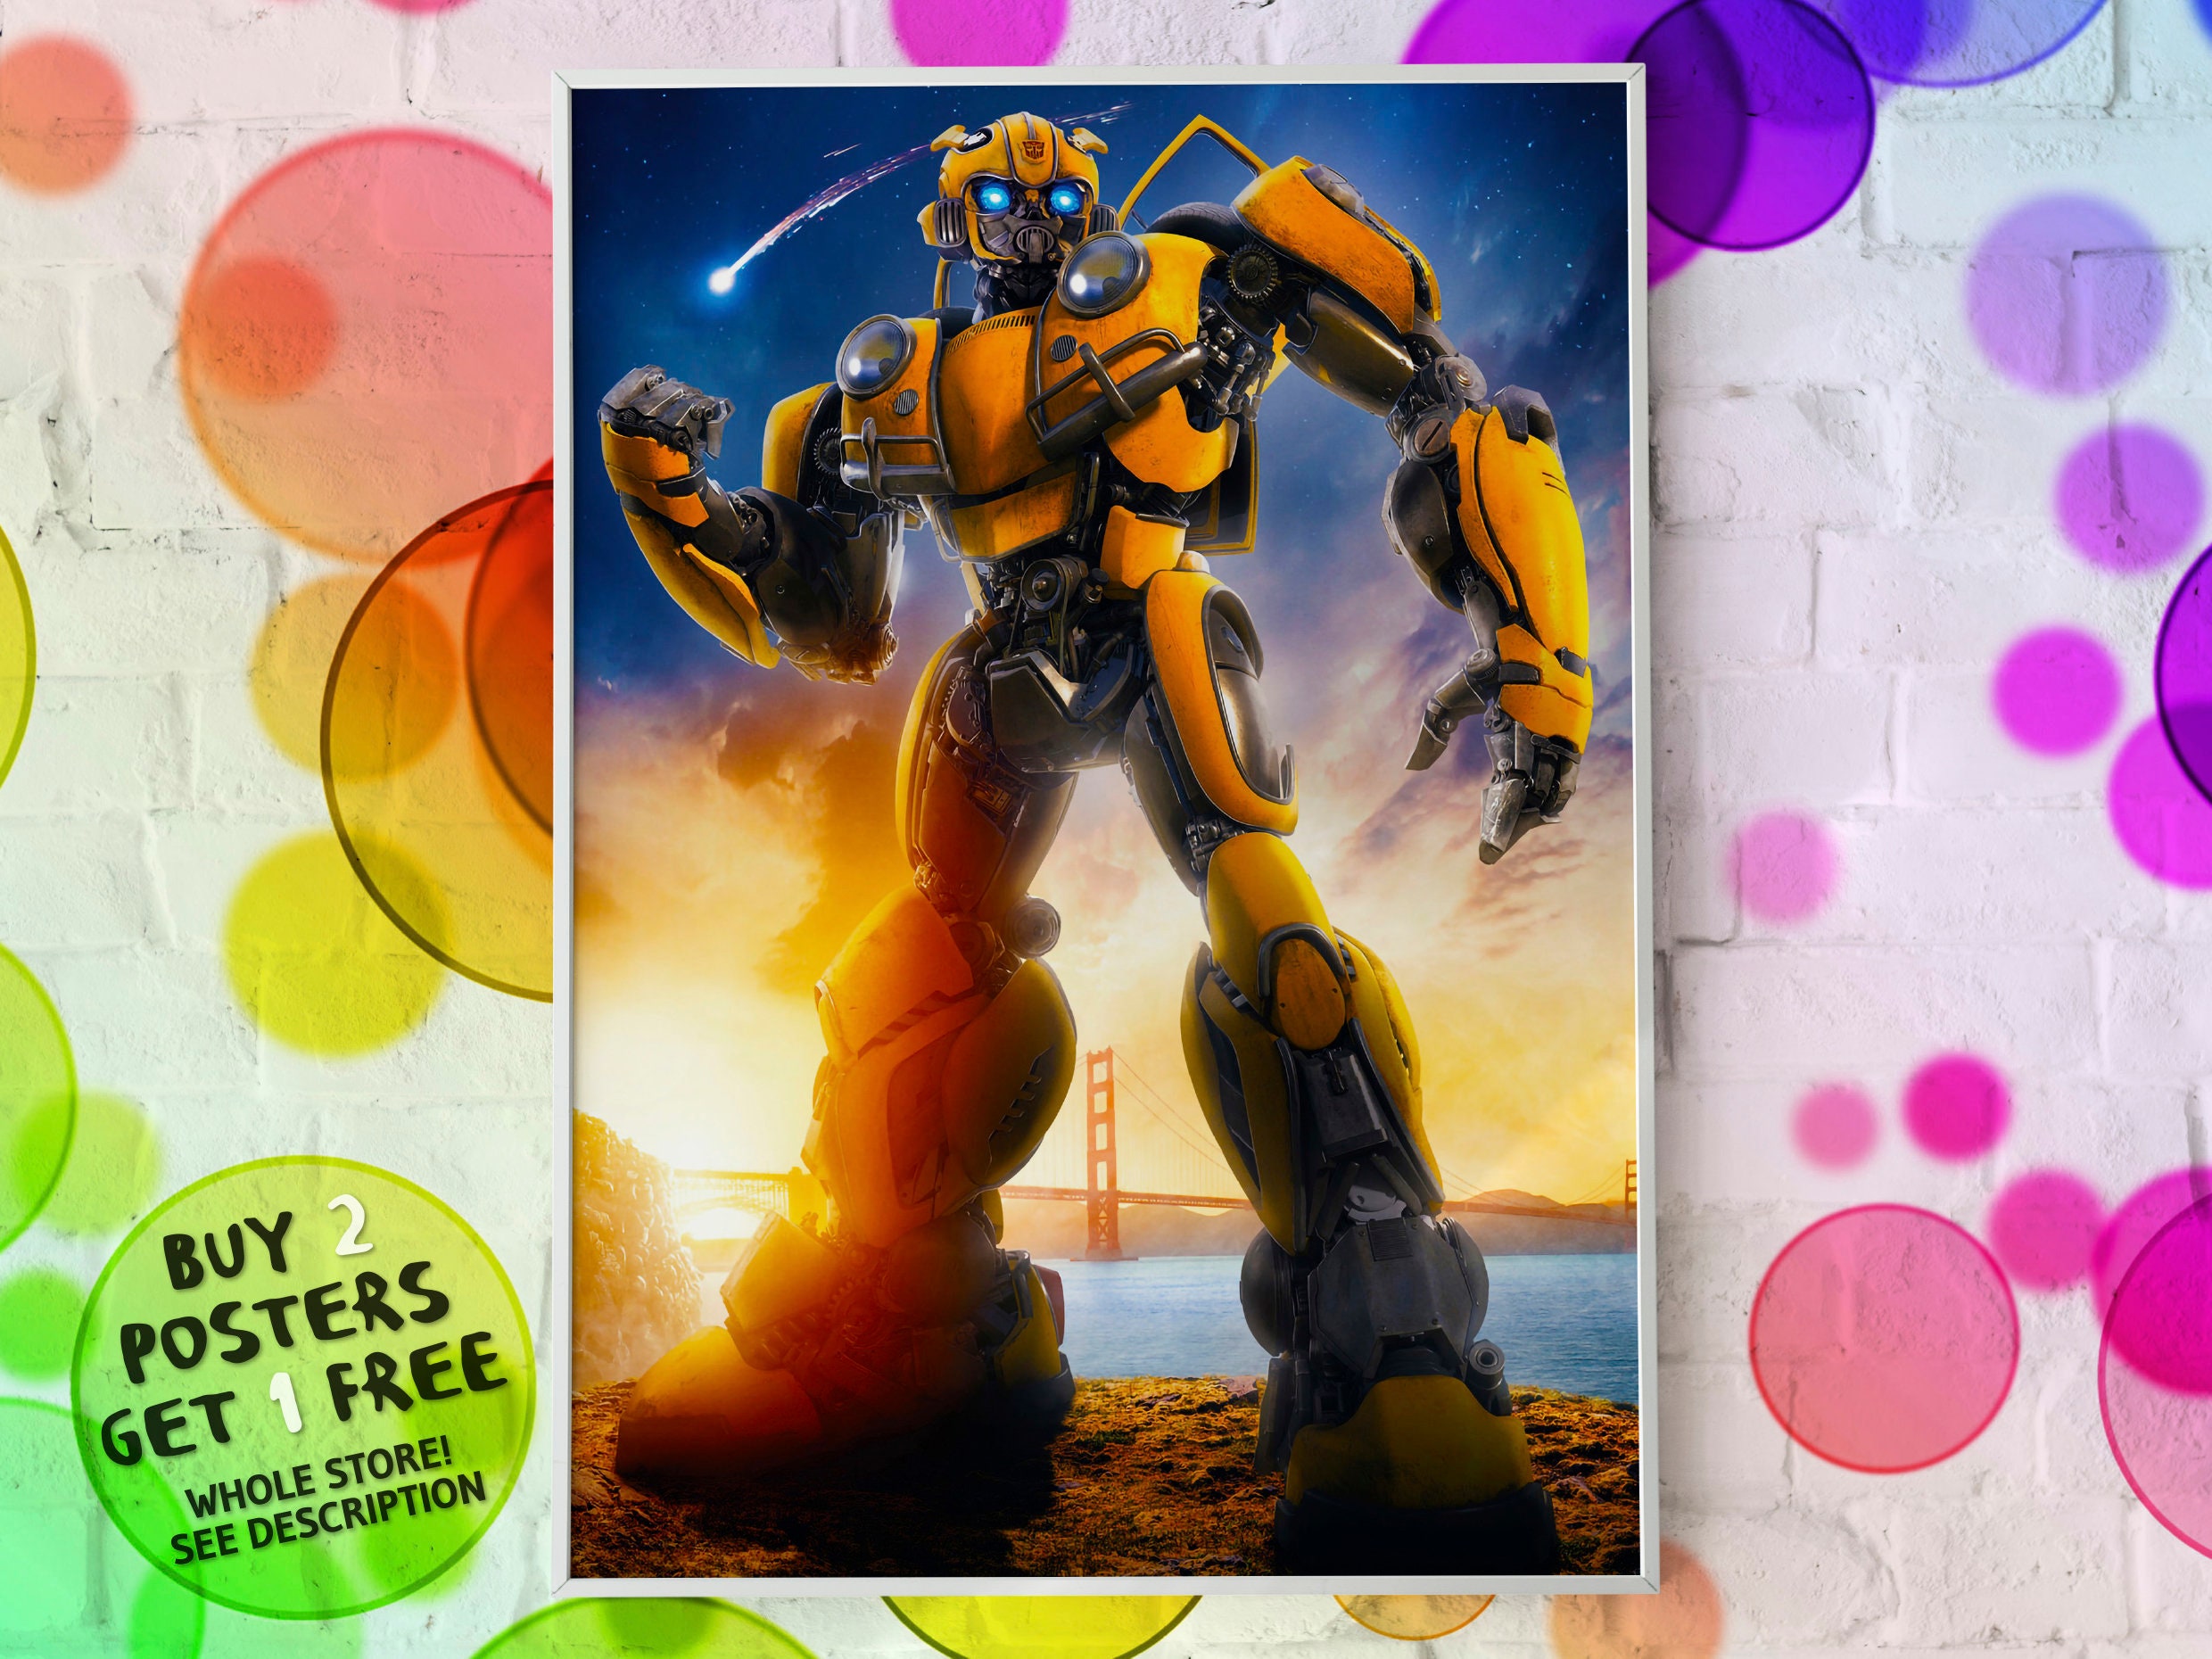 2018 Bumblebee transformers Regal Cinemas 3D Moviebill Playbill w/11x17 Poster 